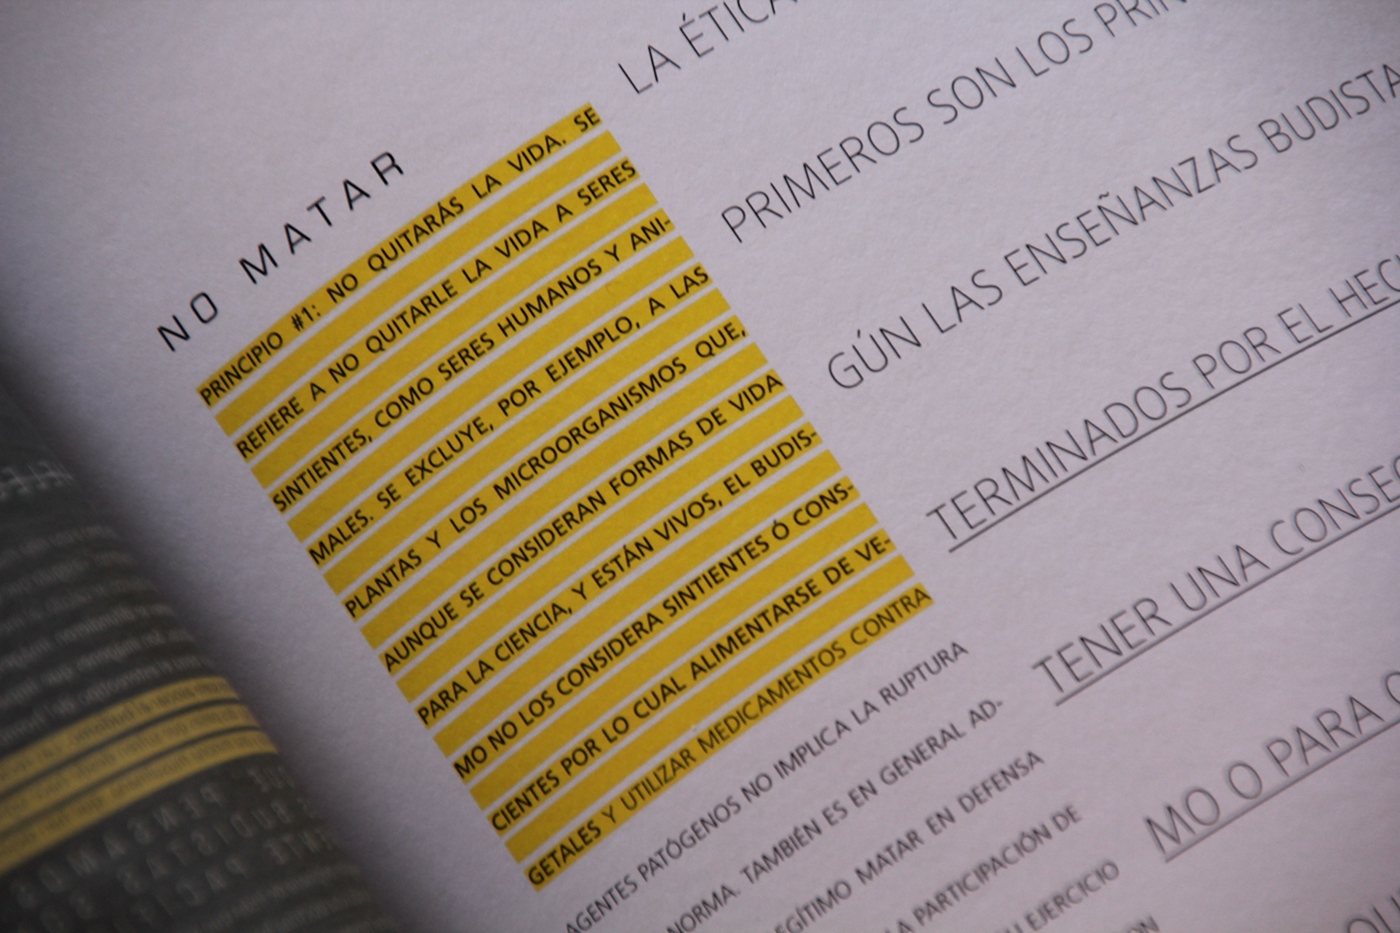 Tipografía II longinotti enciclopedia credos encontrados contradiccion dobles tipografia editorial diseño grafico fadu uba